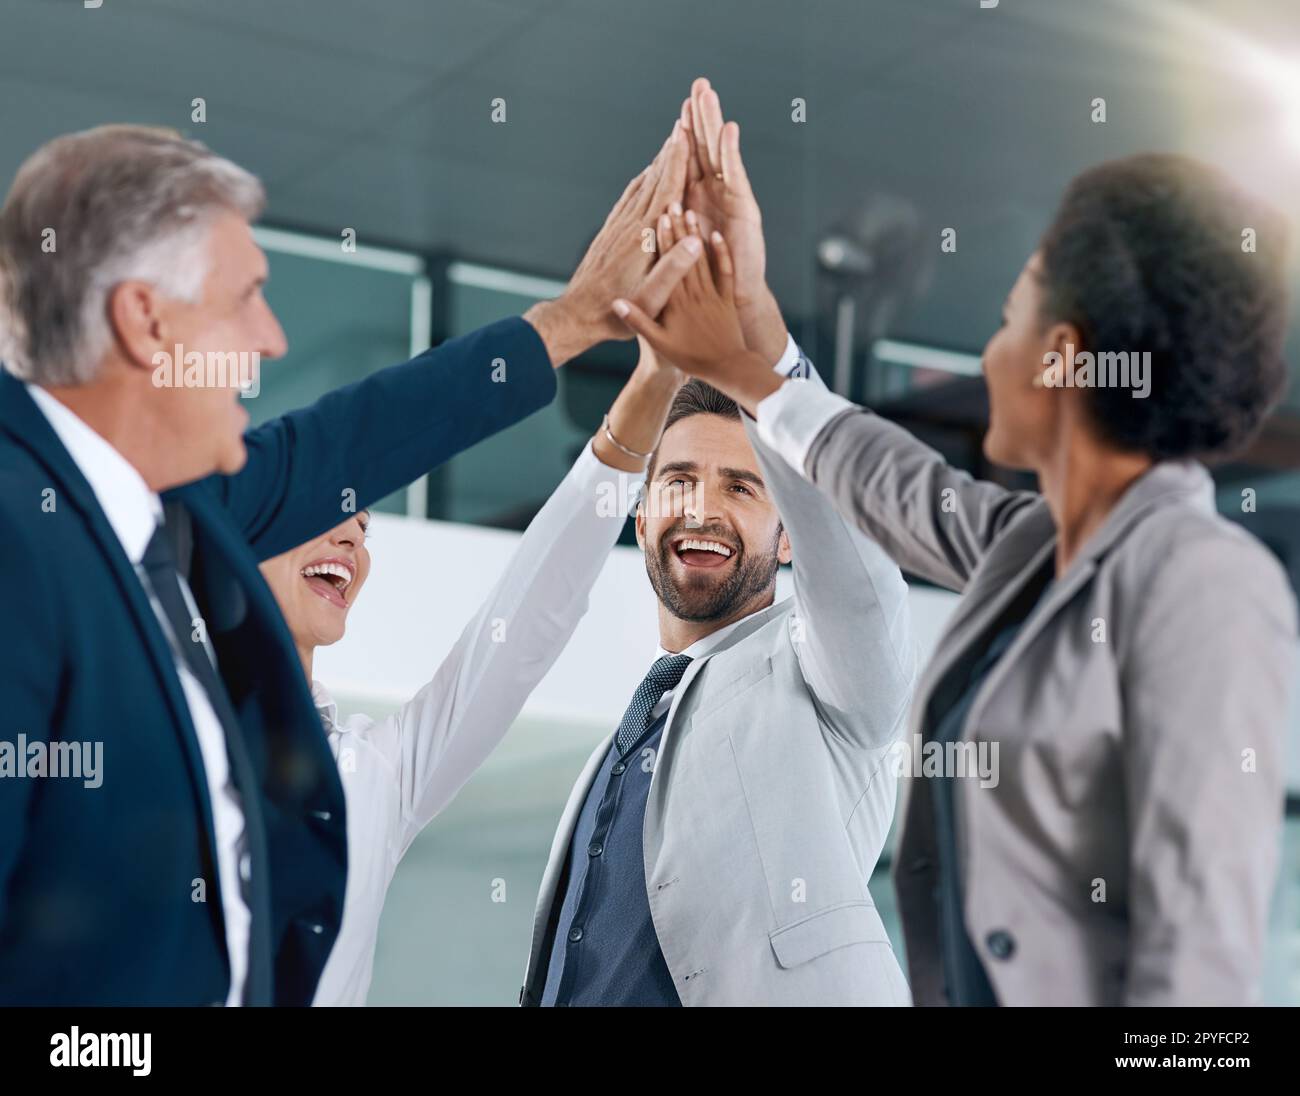 Harte Arbeit zahlt sich aus. Motivierte Arbeitskollegen lächeln und feiern mit einem High Five. Stockfoto